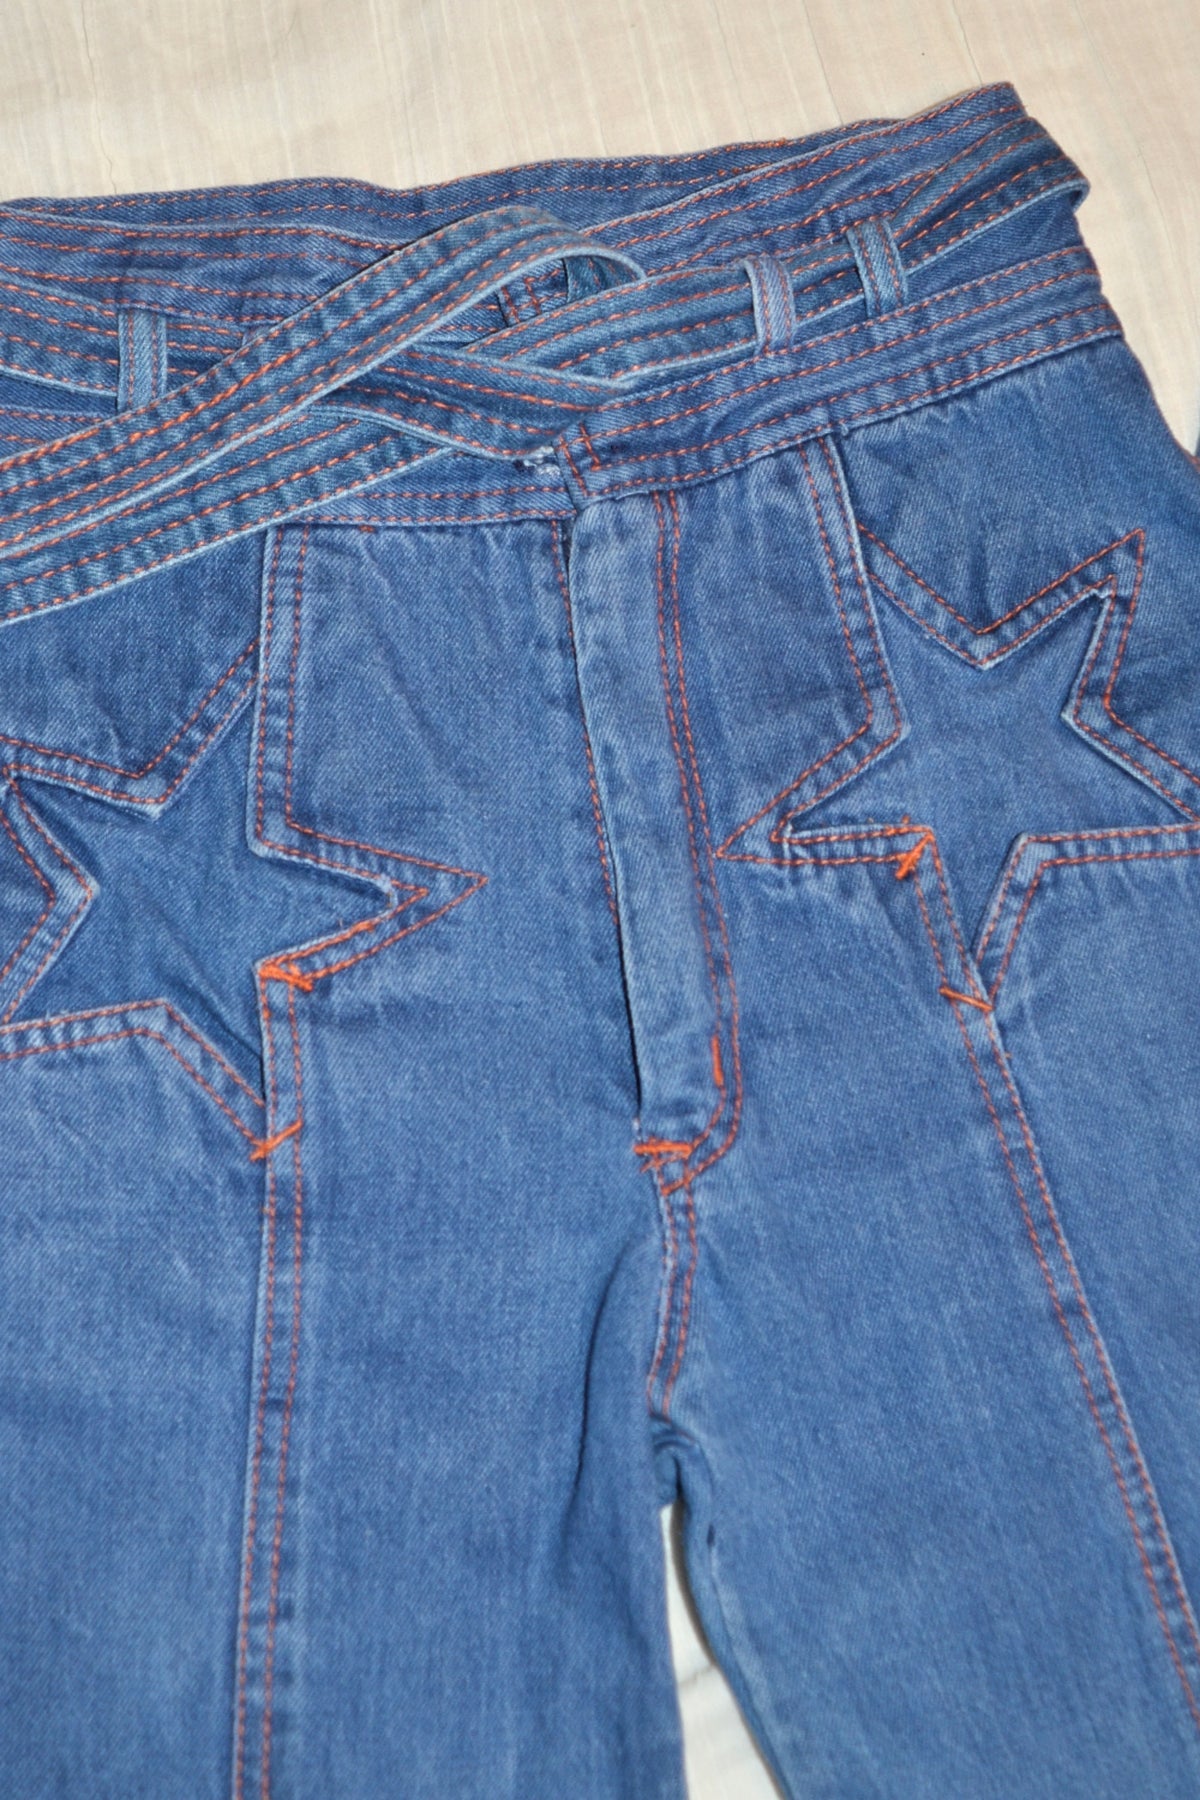 SOLD RARE Vintage 70s N'est Ce Pas? Star Jeans, High Waist + Belt